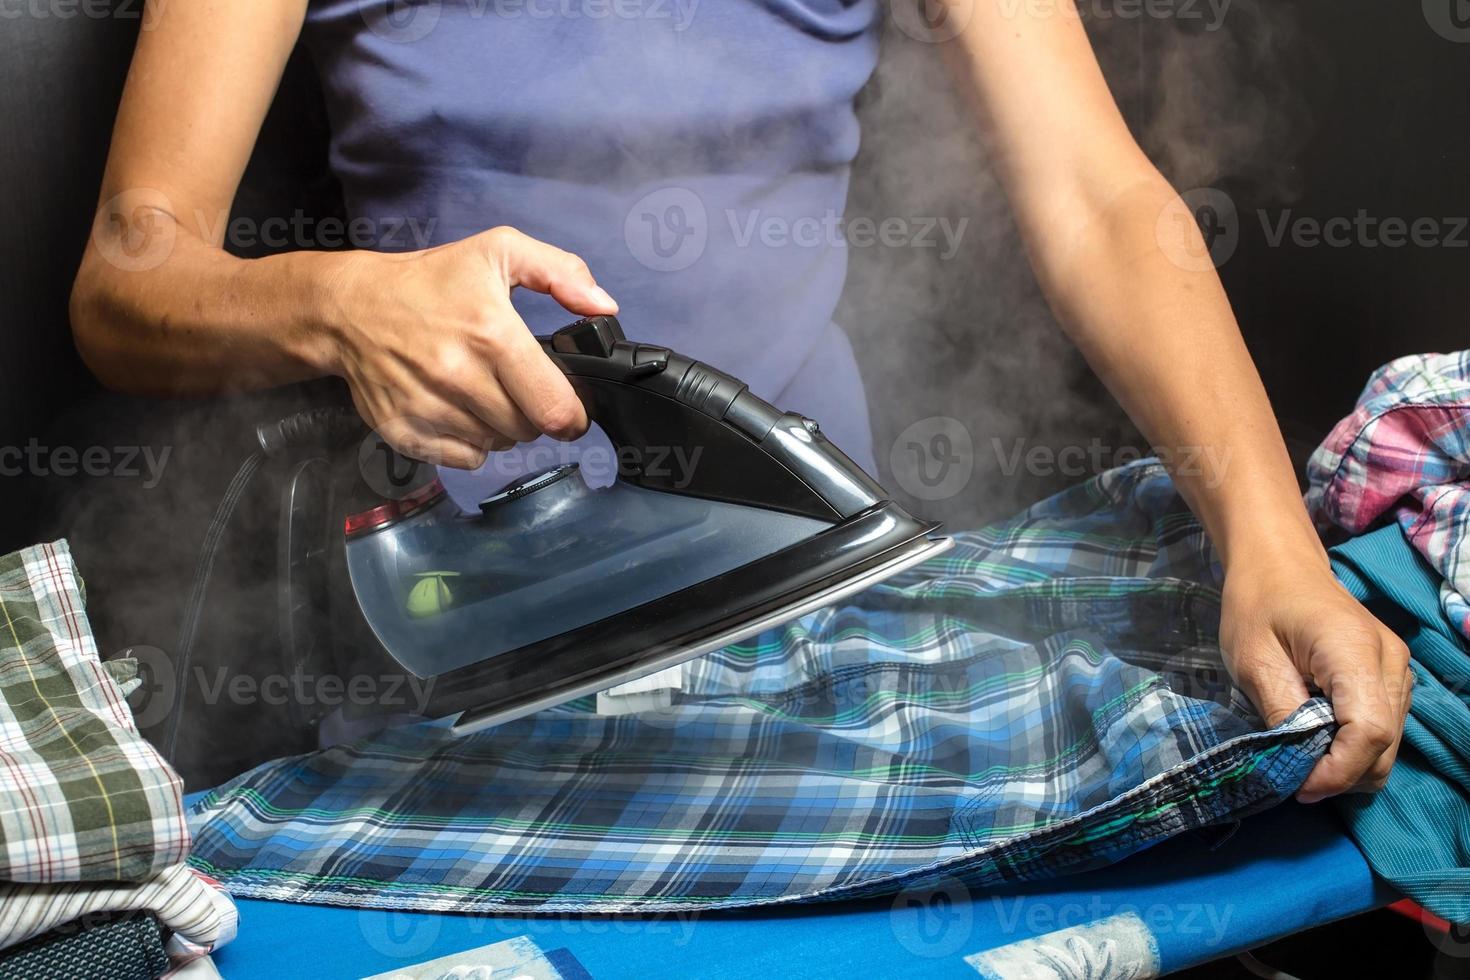 la mujer está planchando ropa limpia con una plancha caliente y vapor, las camisas cuidadosamente dobladas yacen cerca. tareas del hogar foto